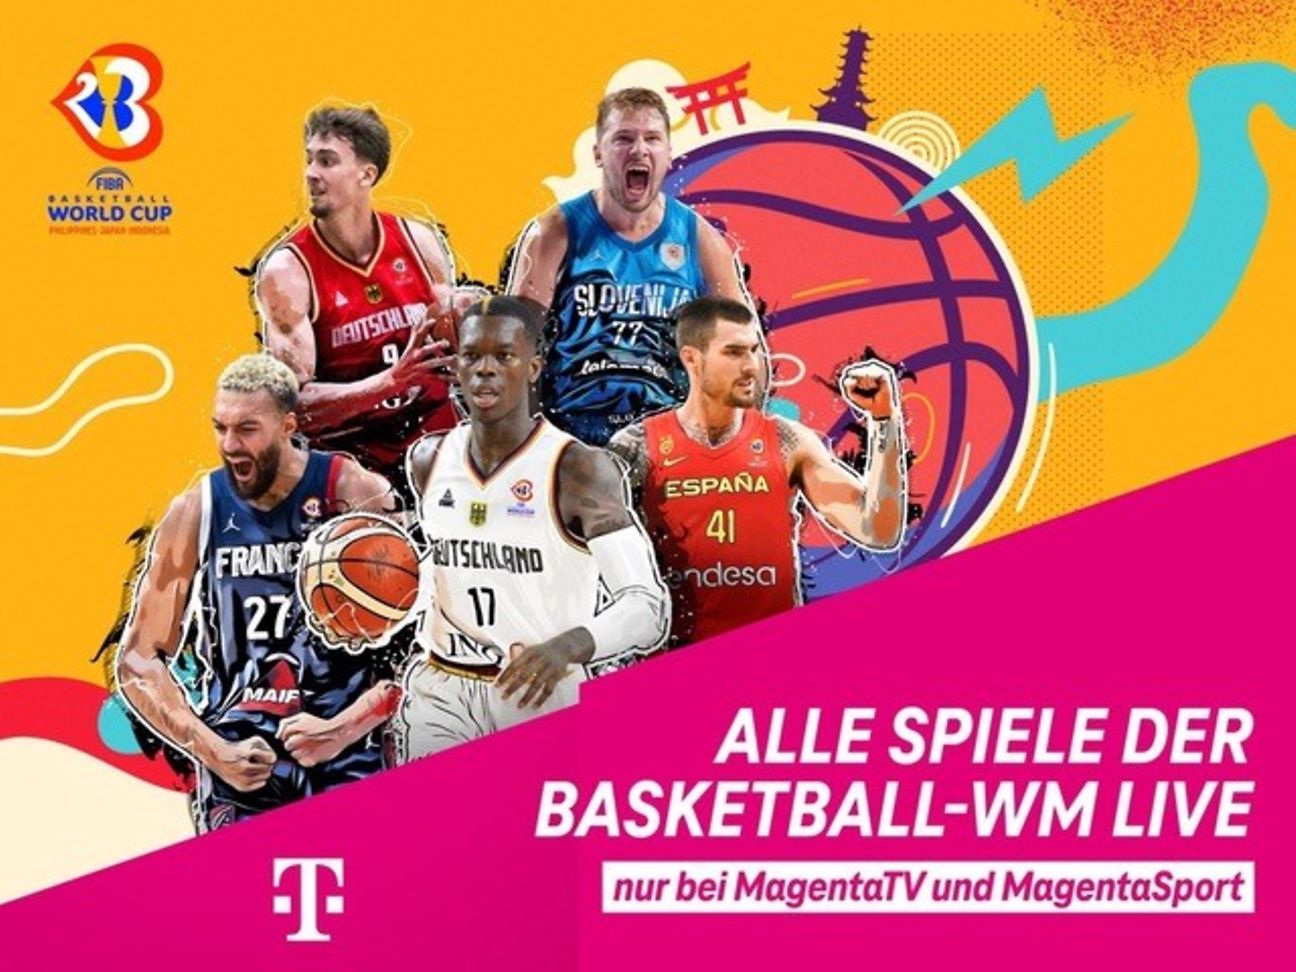 Basketball WM und Countdown komplett live bei MagentaSport Deutsche Telekom